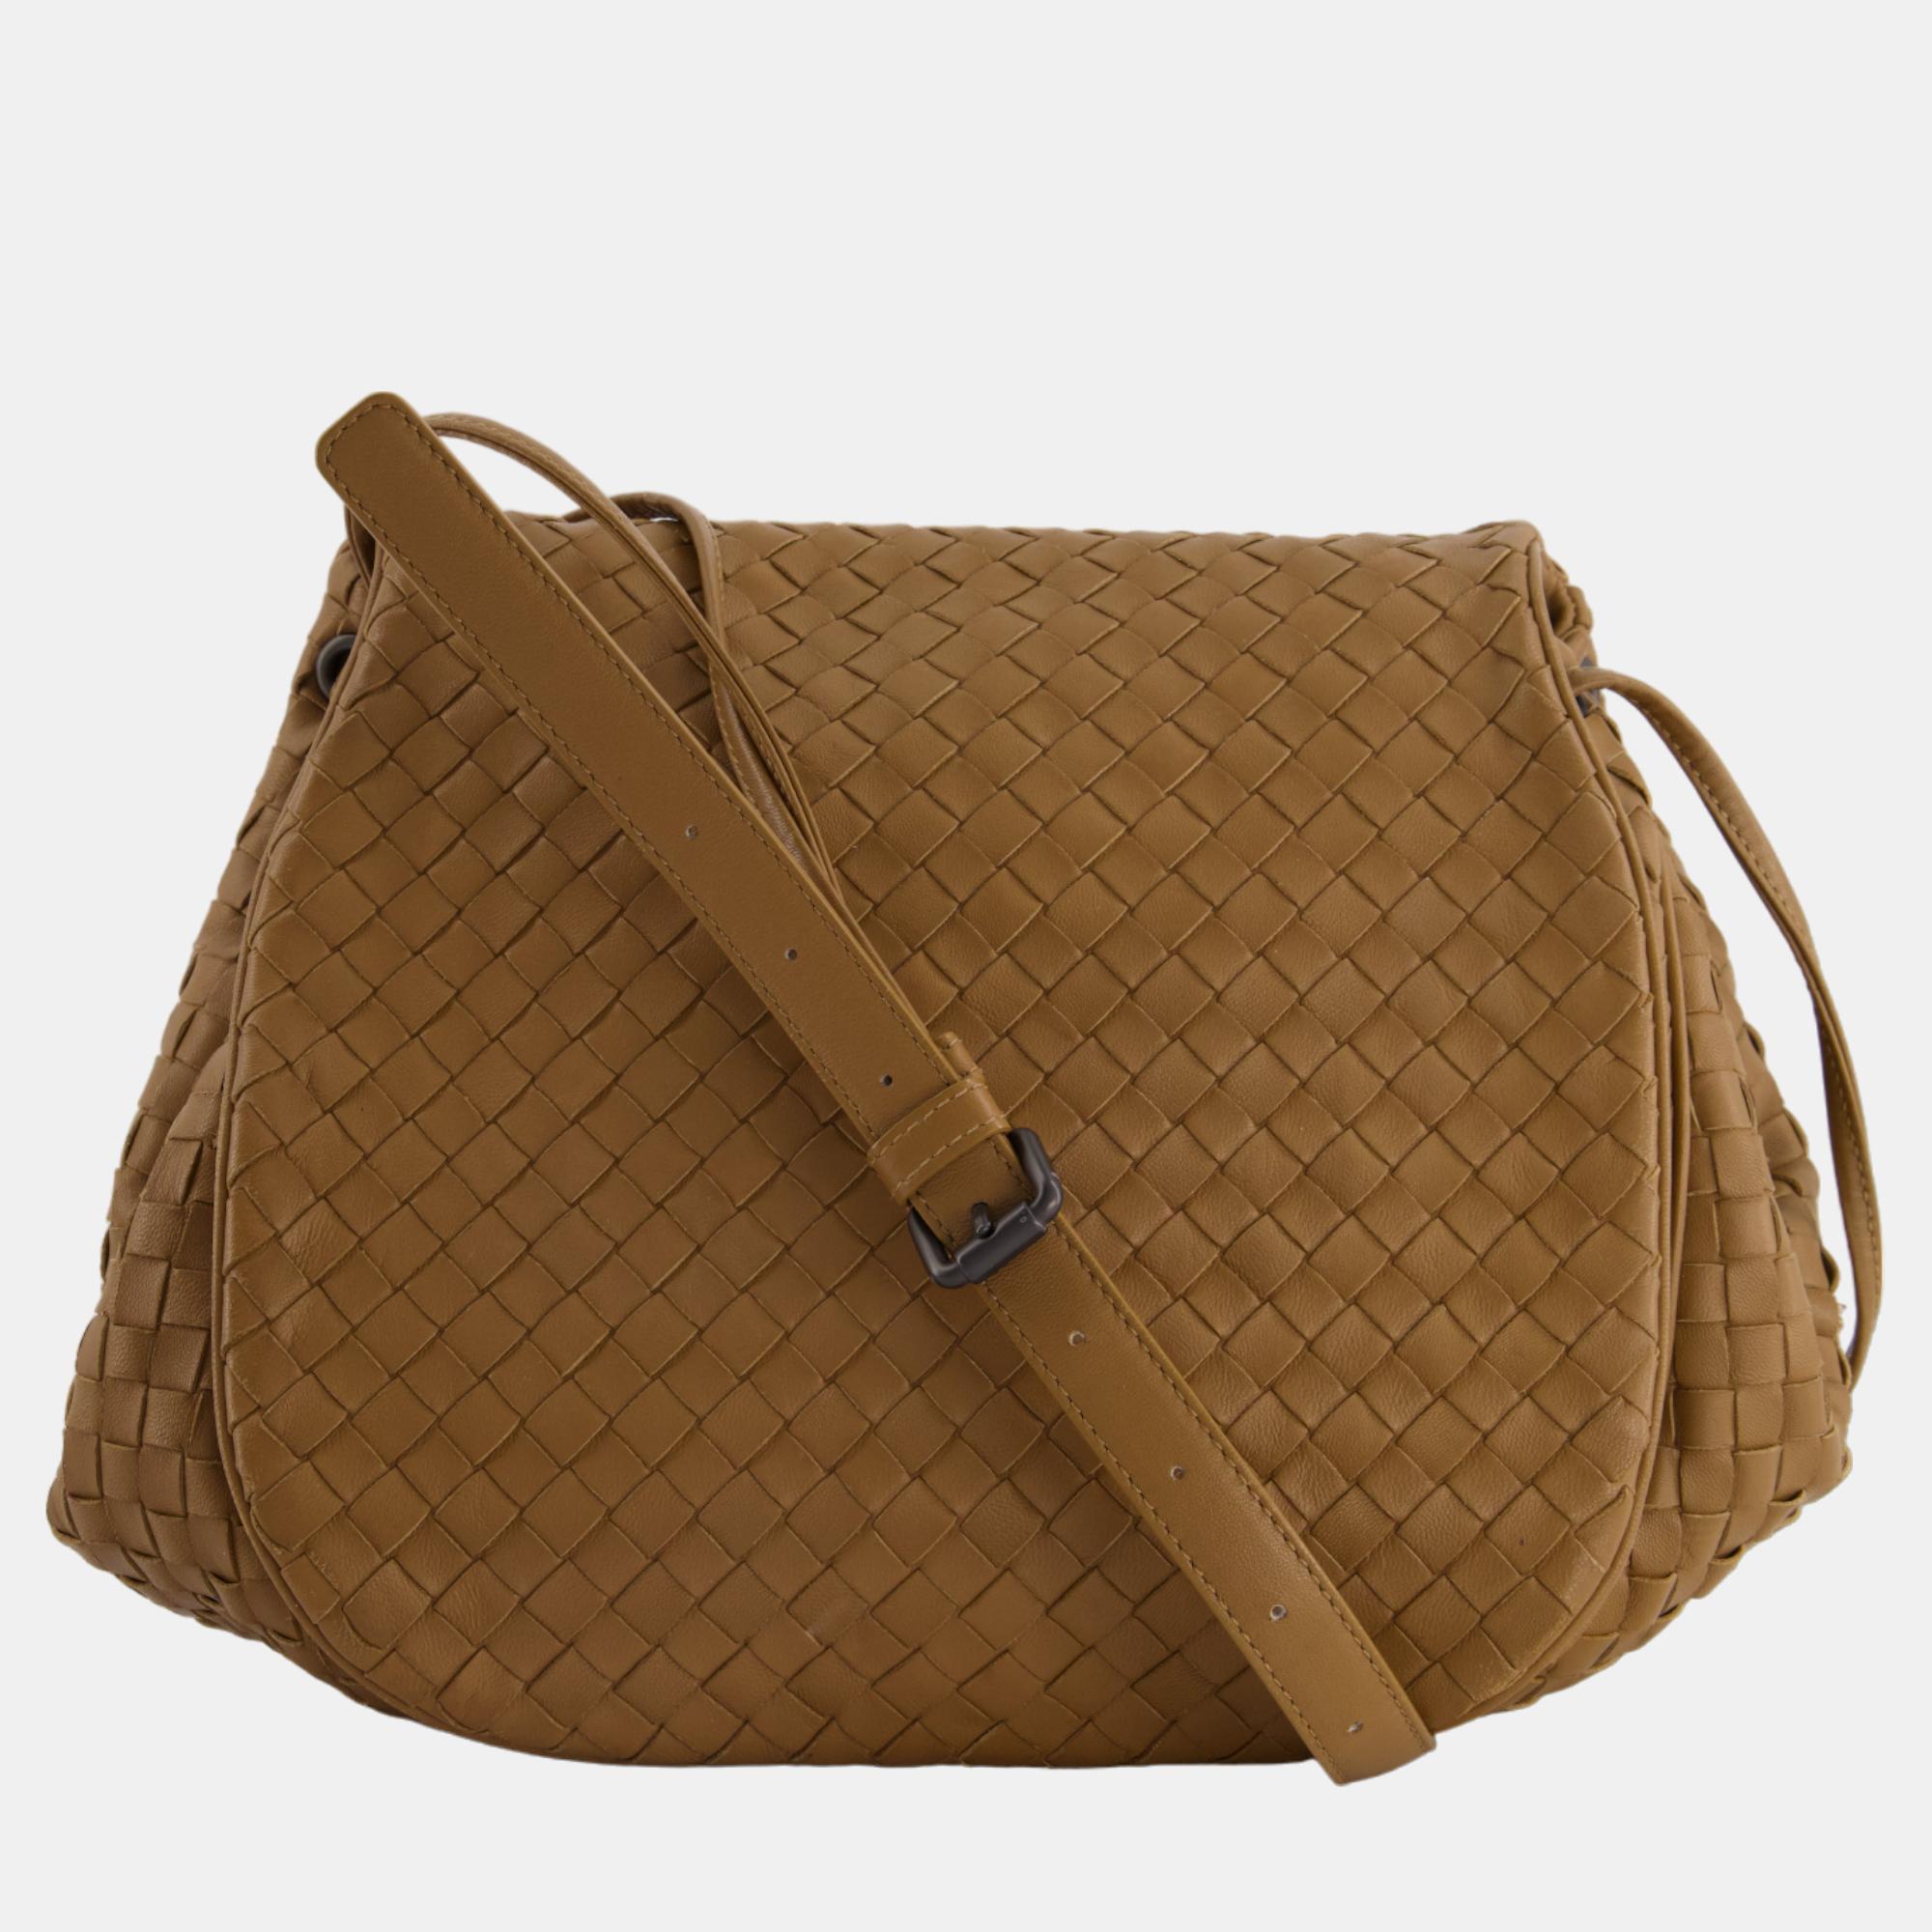 Bottega Brown Leather Intrecciato Shoulder Bag With Black Hardware